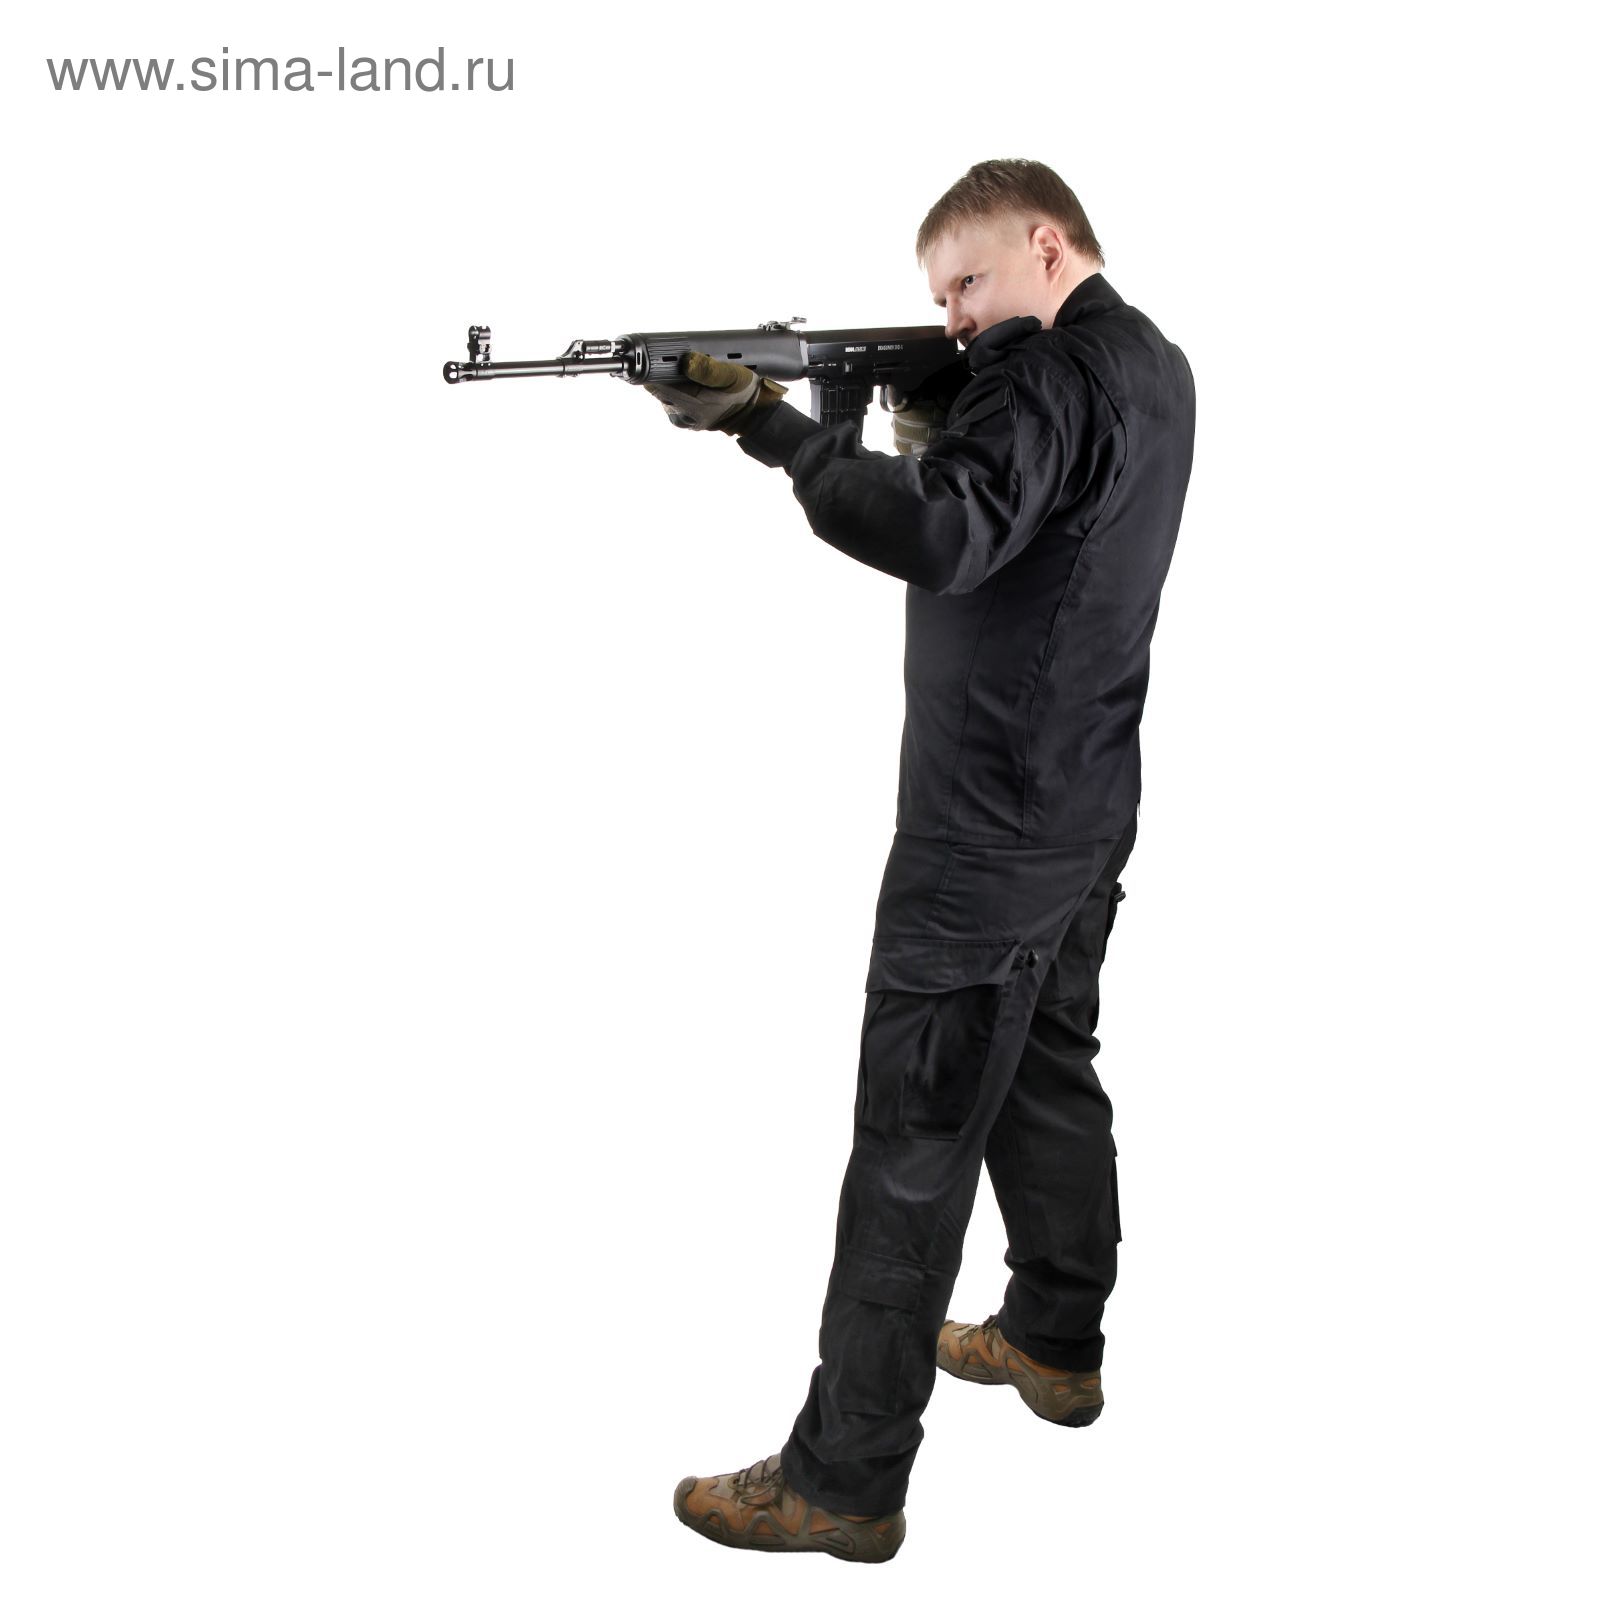 Костюм для спецназа летний МПА-04 (НАТО-1) черный, ткань Мираж-210 (52/4)